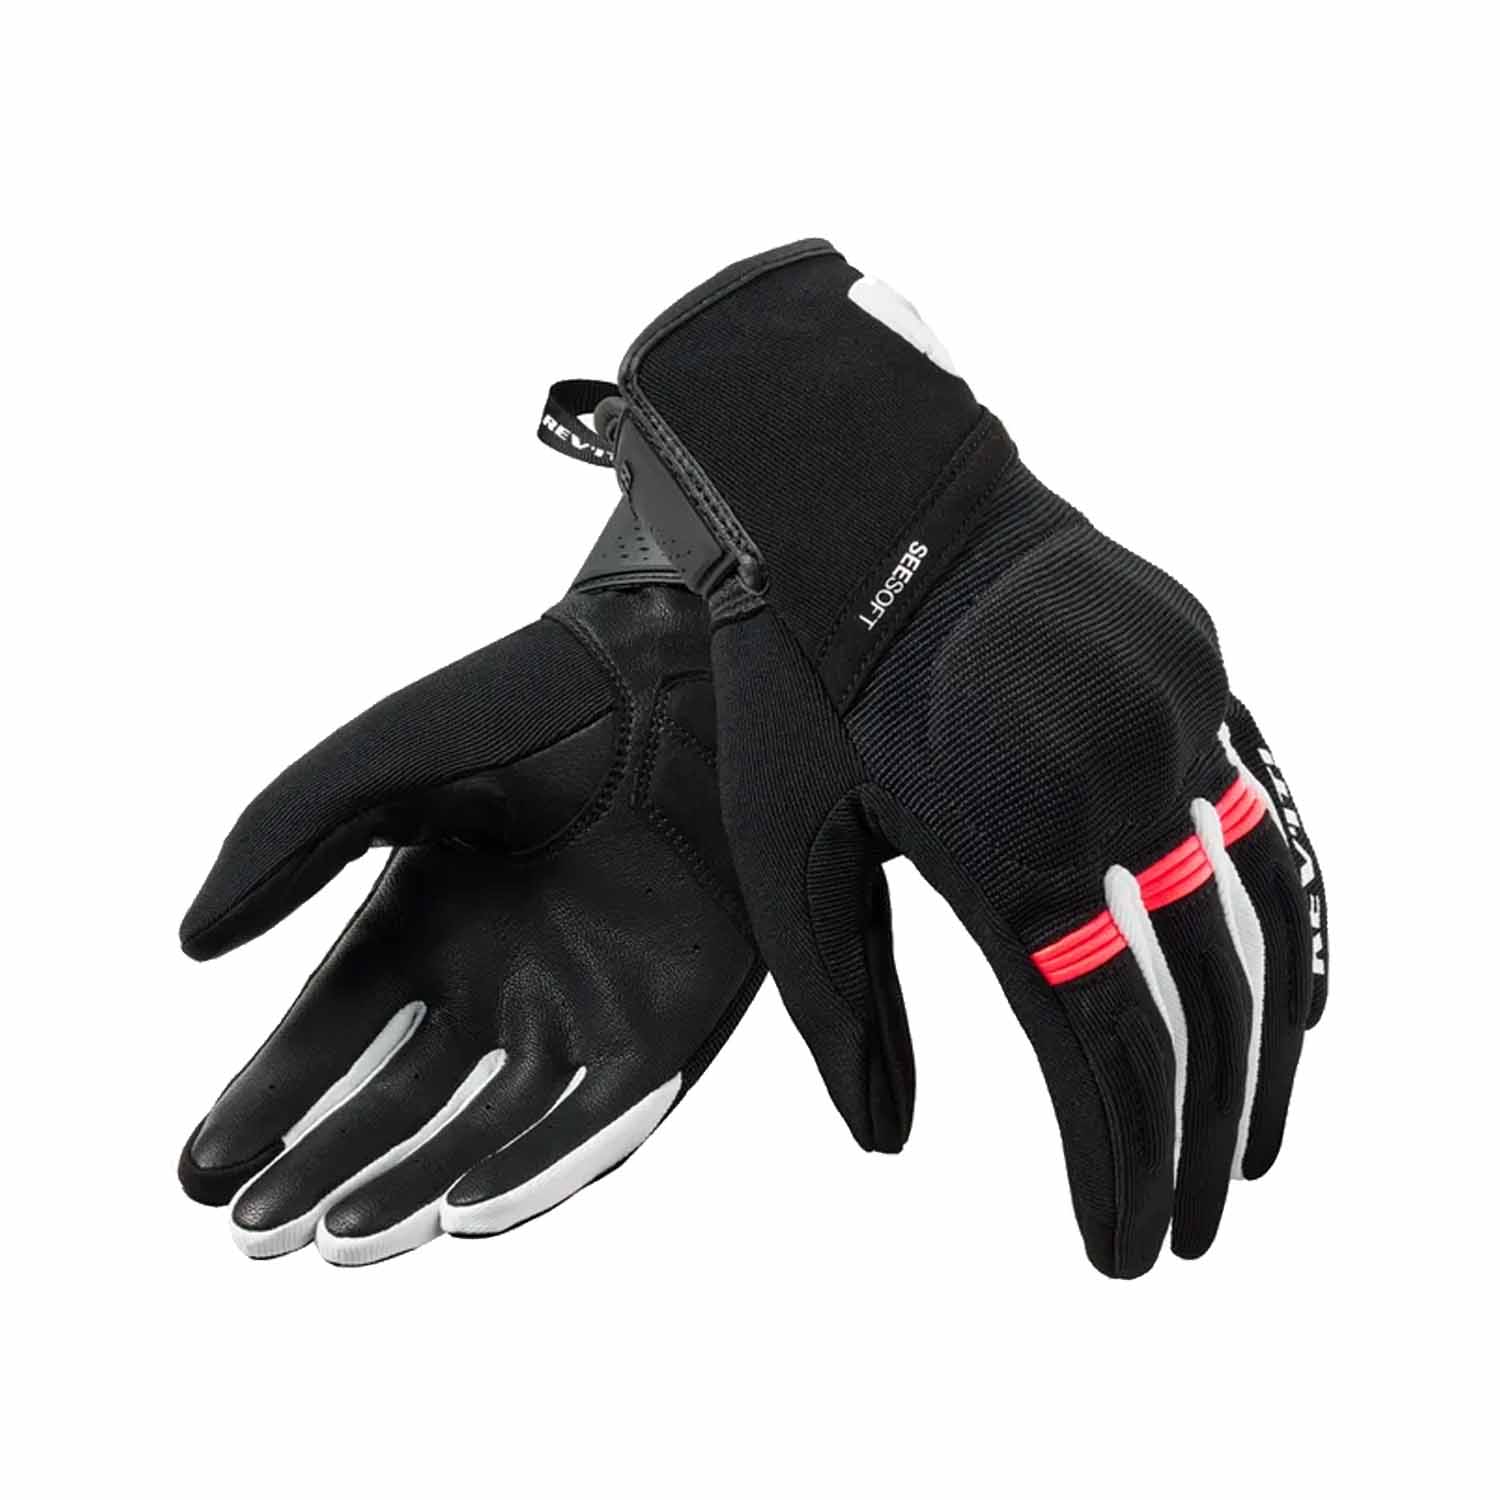 Image of REV'IT! Mosca 2 Ladies Gloves Black Pink Größe S